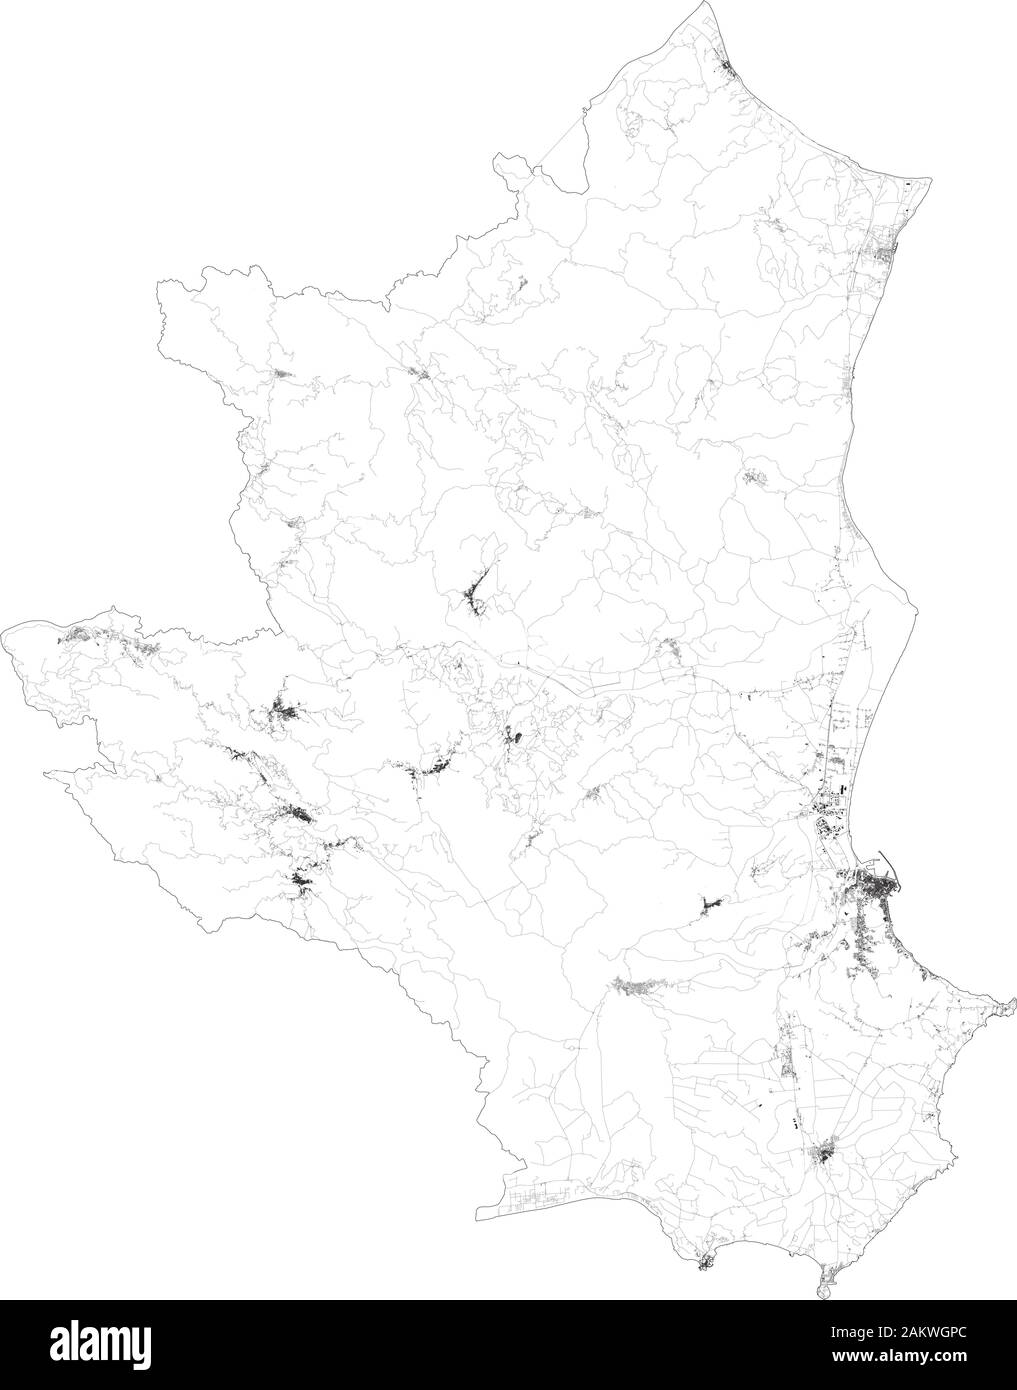 Sat-Karte der Provinz Crotone Städte und Straßen, Gebäude und Straßen der Umgebung. Region Kalabrien, Italien. Karte Straßen Stock Vektor